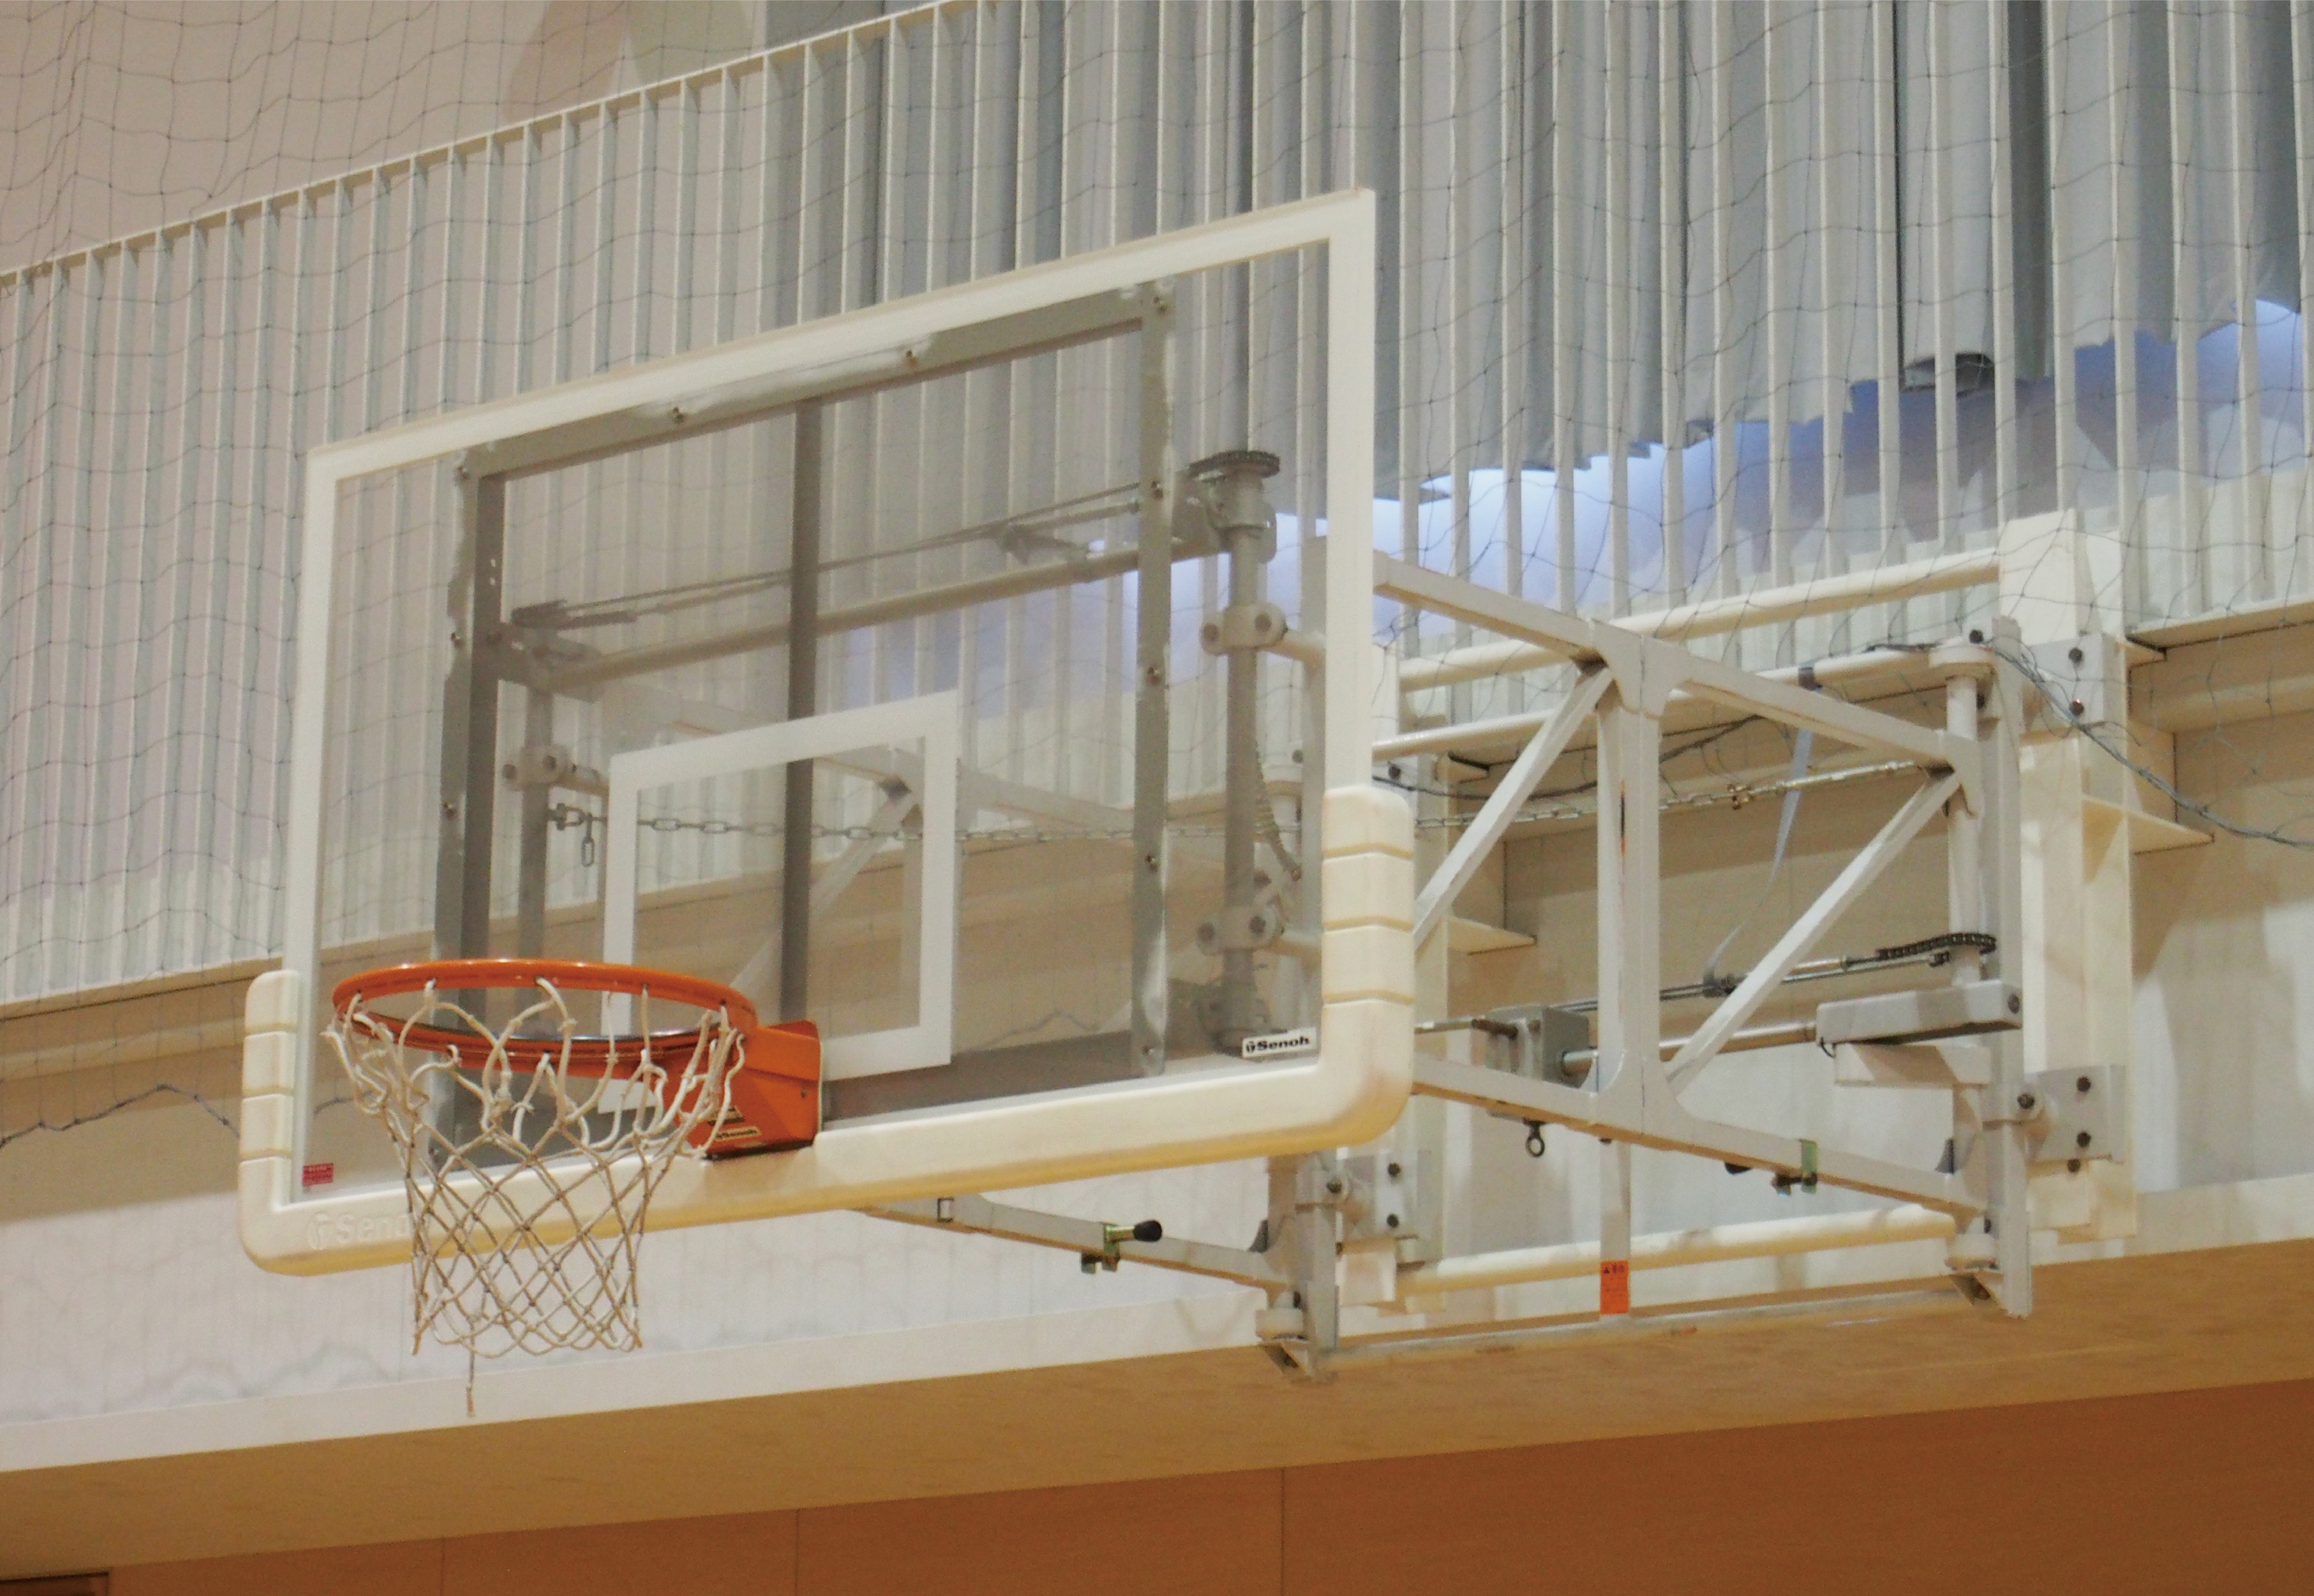 アジア初 セノーの壁面固定折畳式バスケットゴールが国際バスケットボール連盟 Fiba の認定を取得 セノー株式会社のプレスリリース